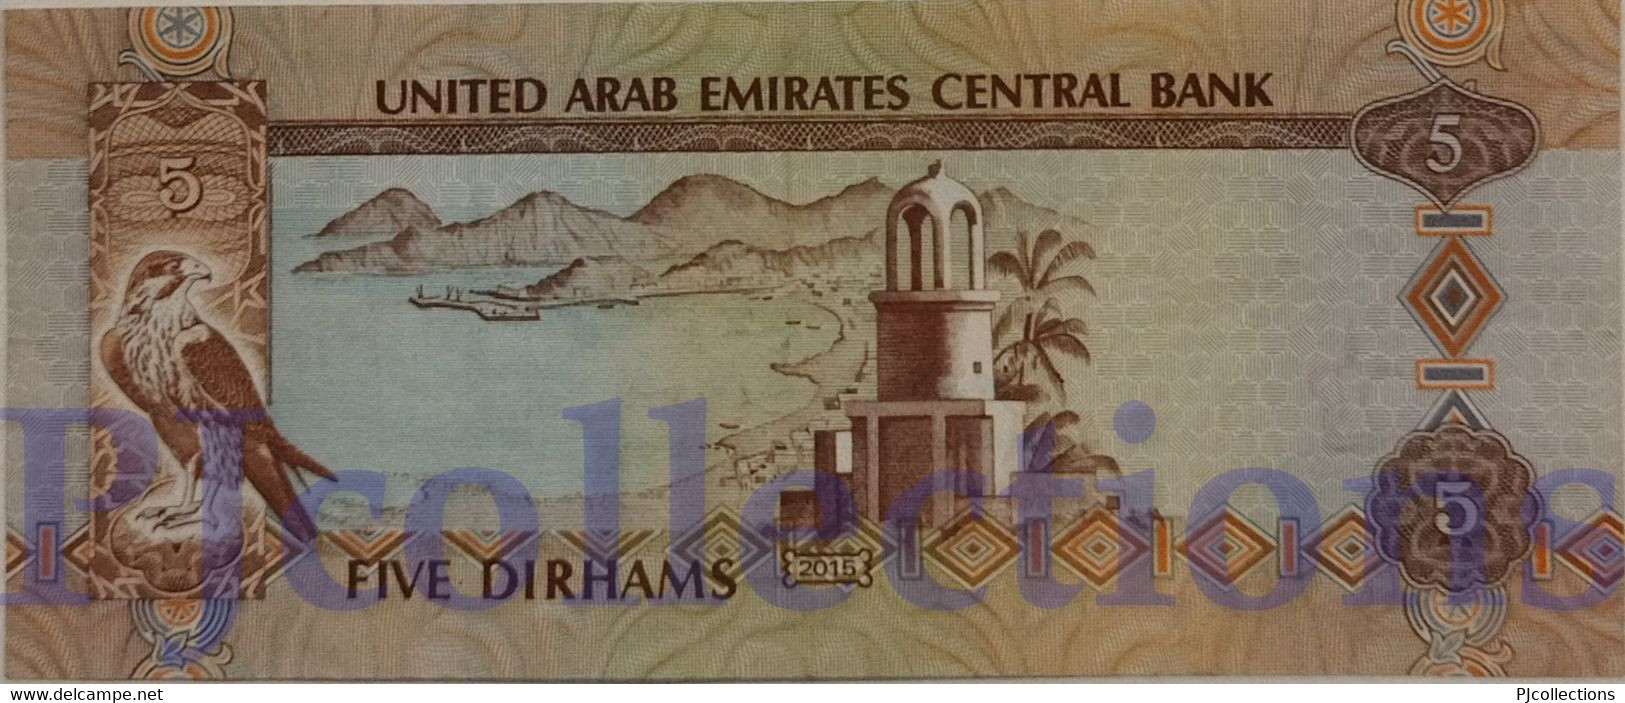 UNITED ARAB EMIRATES 5 DIRHAMS 2015 PICK 26c XF - Ver. Arab. Emirate